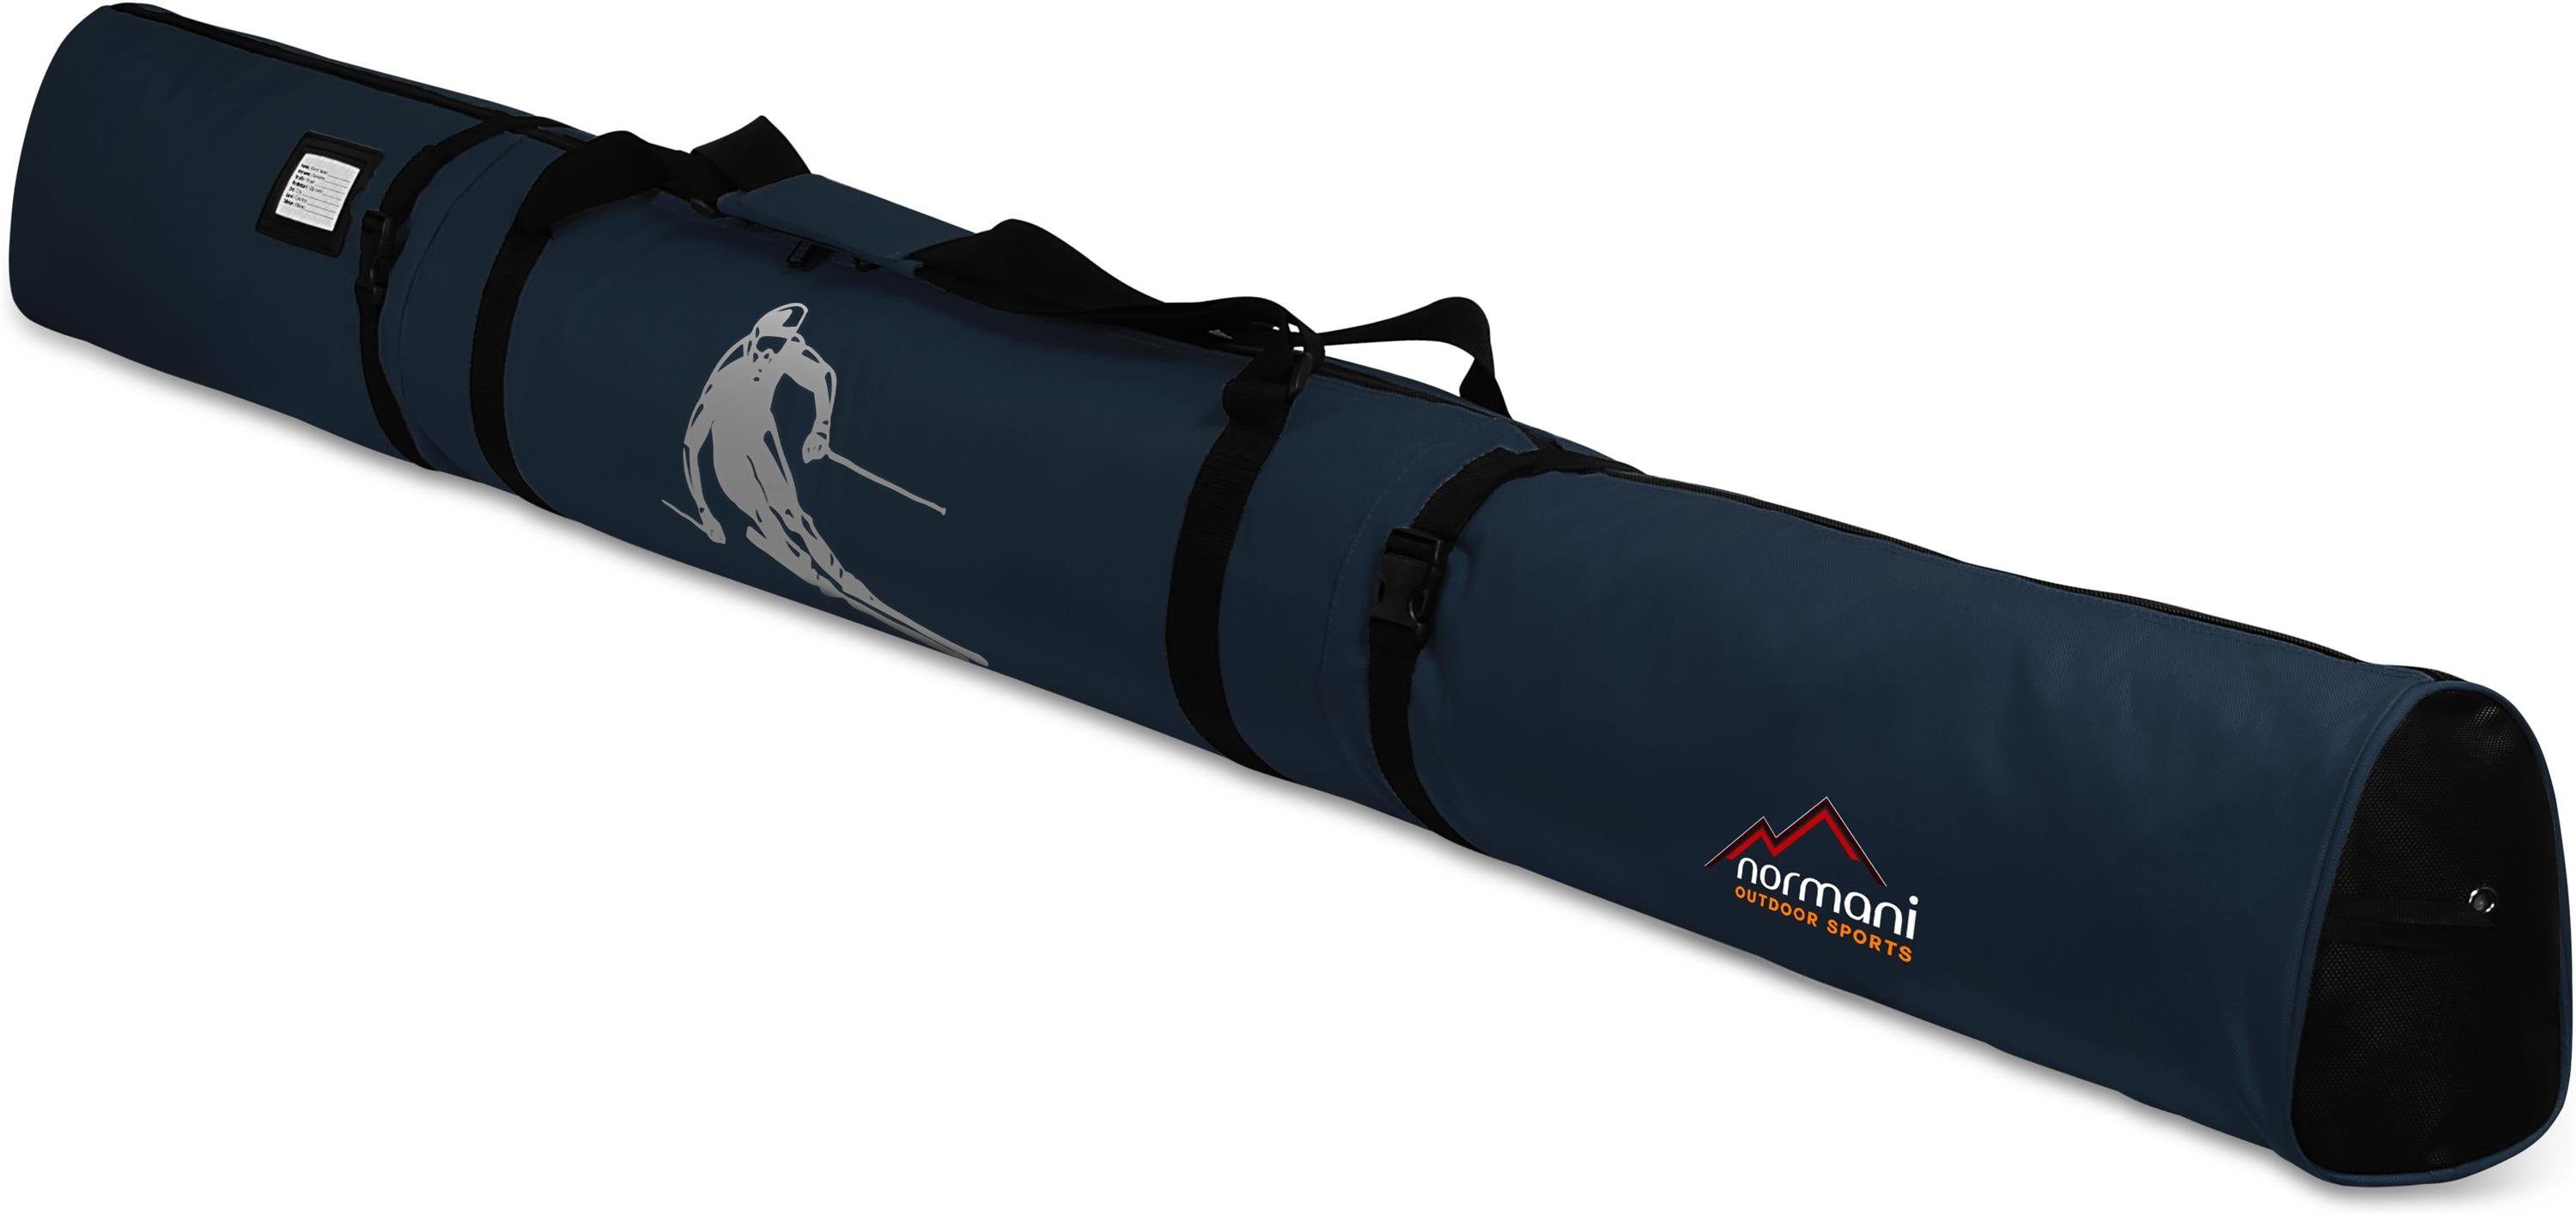 normani Sporttasche Skitasche Alpine Run 170, Skitasche für Skier und Skistöcke Skihülle Transporttasche Aufbewahrungstasche Marine